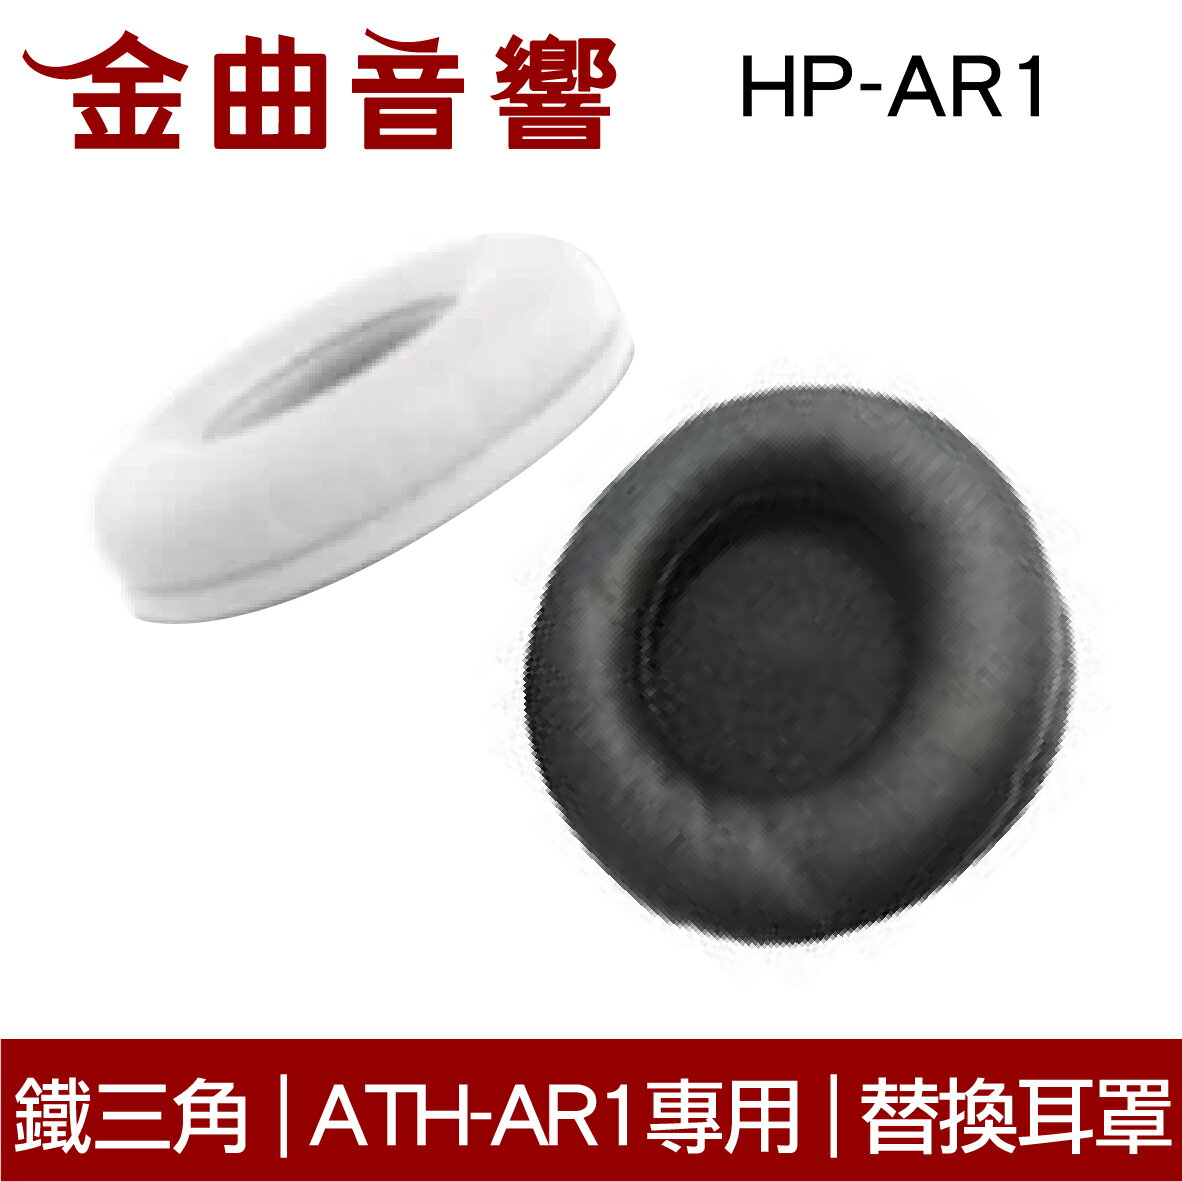 鐵三角 HP-AR1 替換耳罩 一對 ATH-AR1 ATH-FC700 ATH-FC707 適用 | 金曲音響